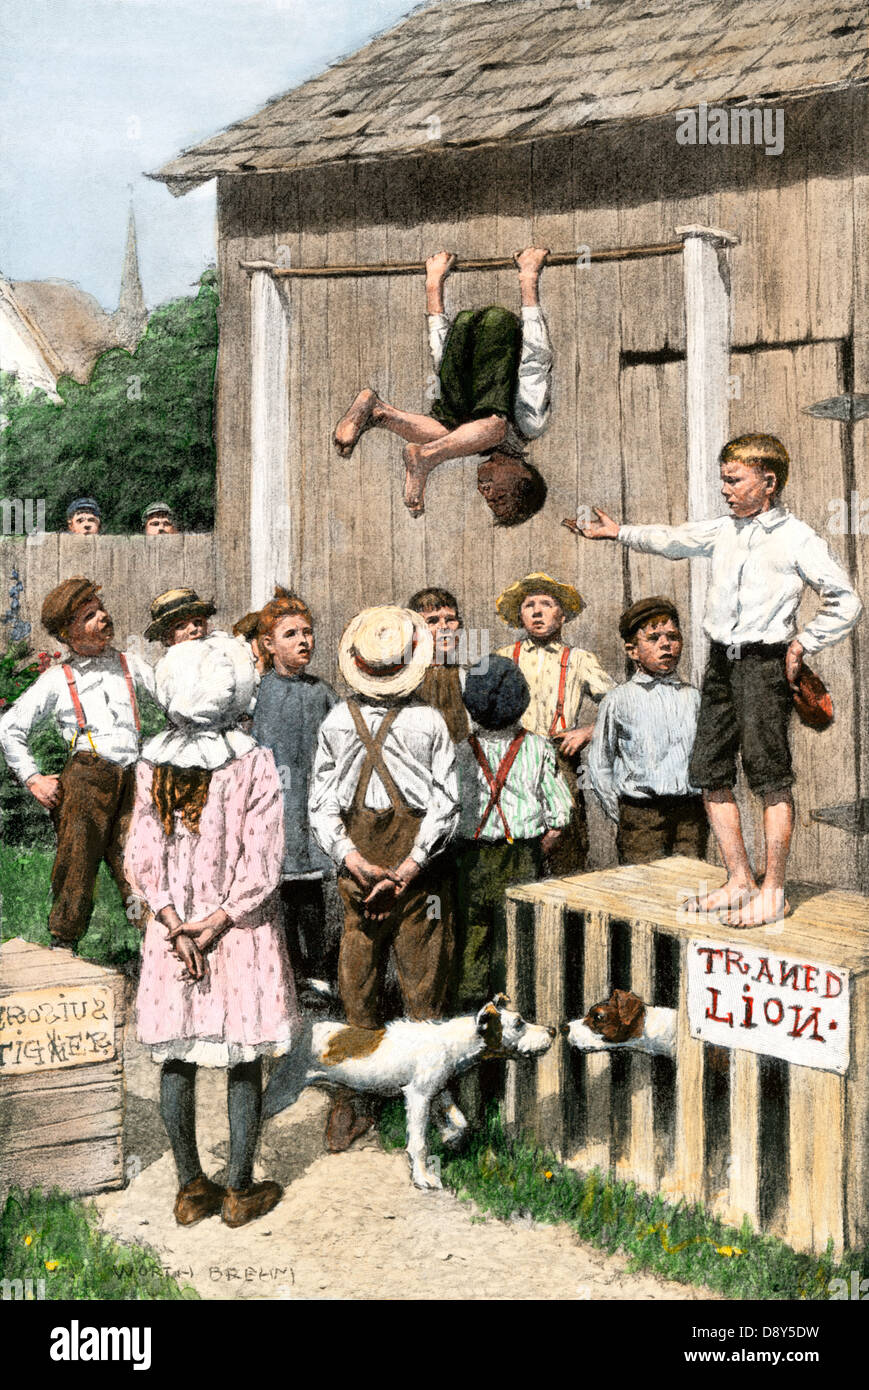 Mettre les enfants sur un cirque dans la cour, années 1800. À la main, gravure sur bois Banque D'Images